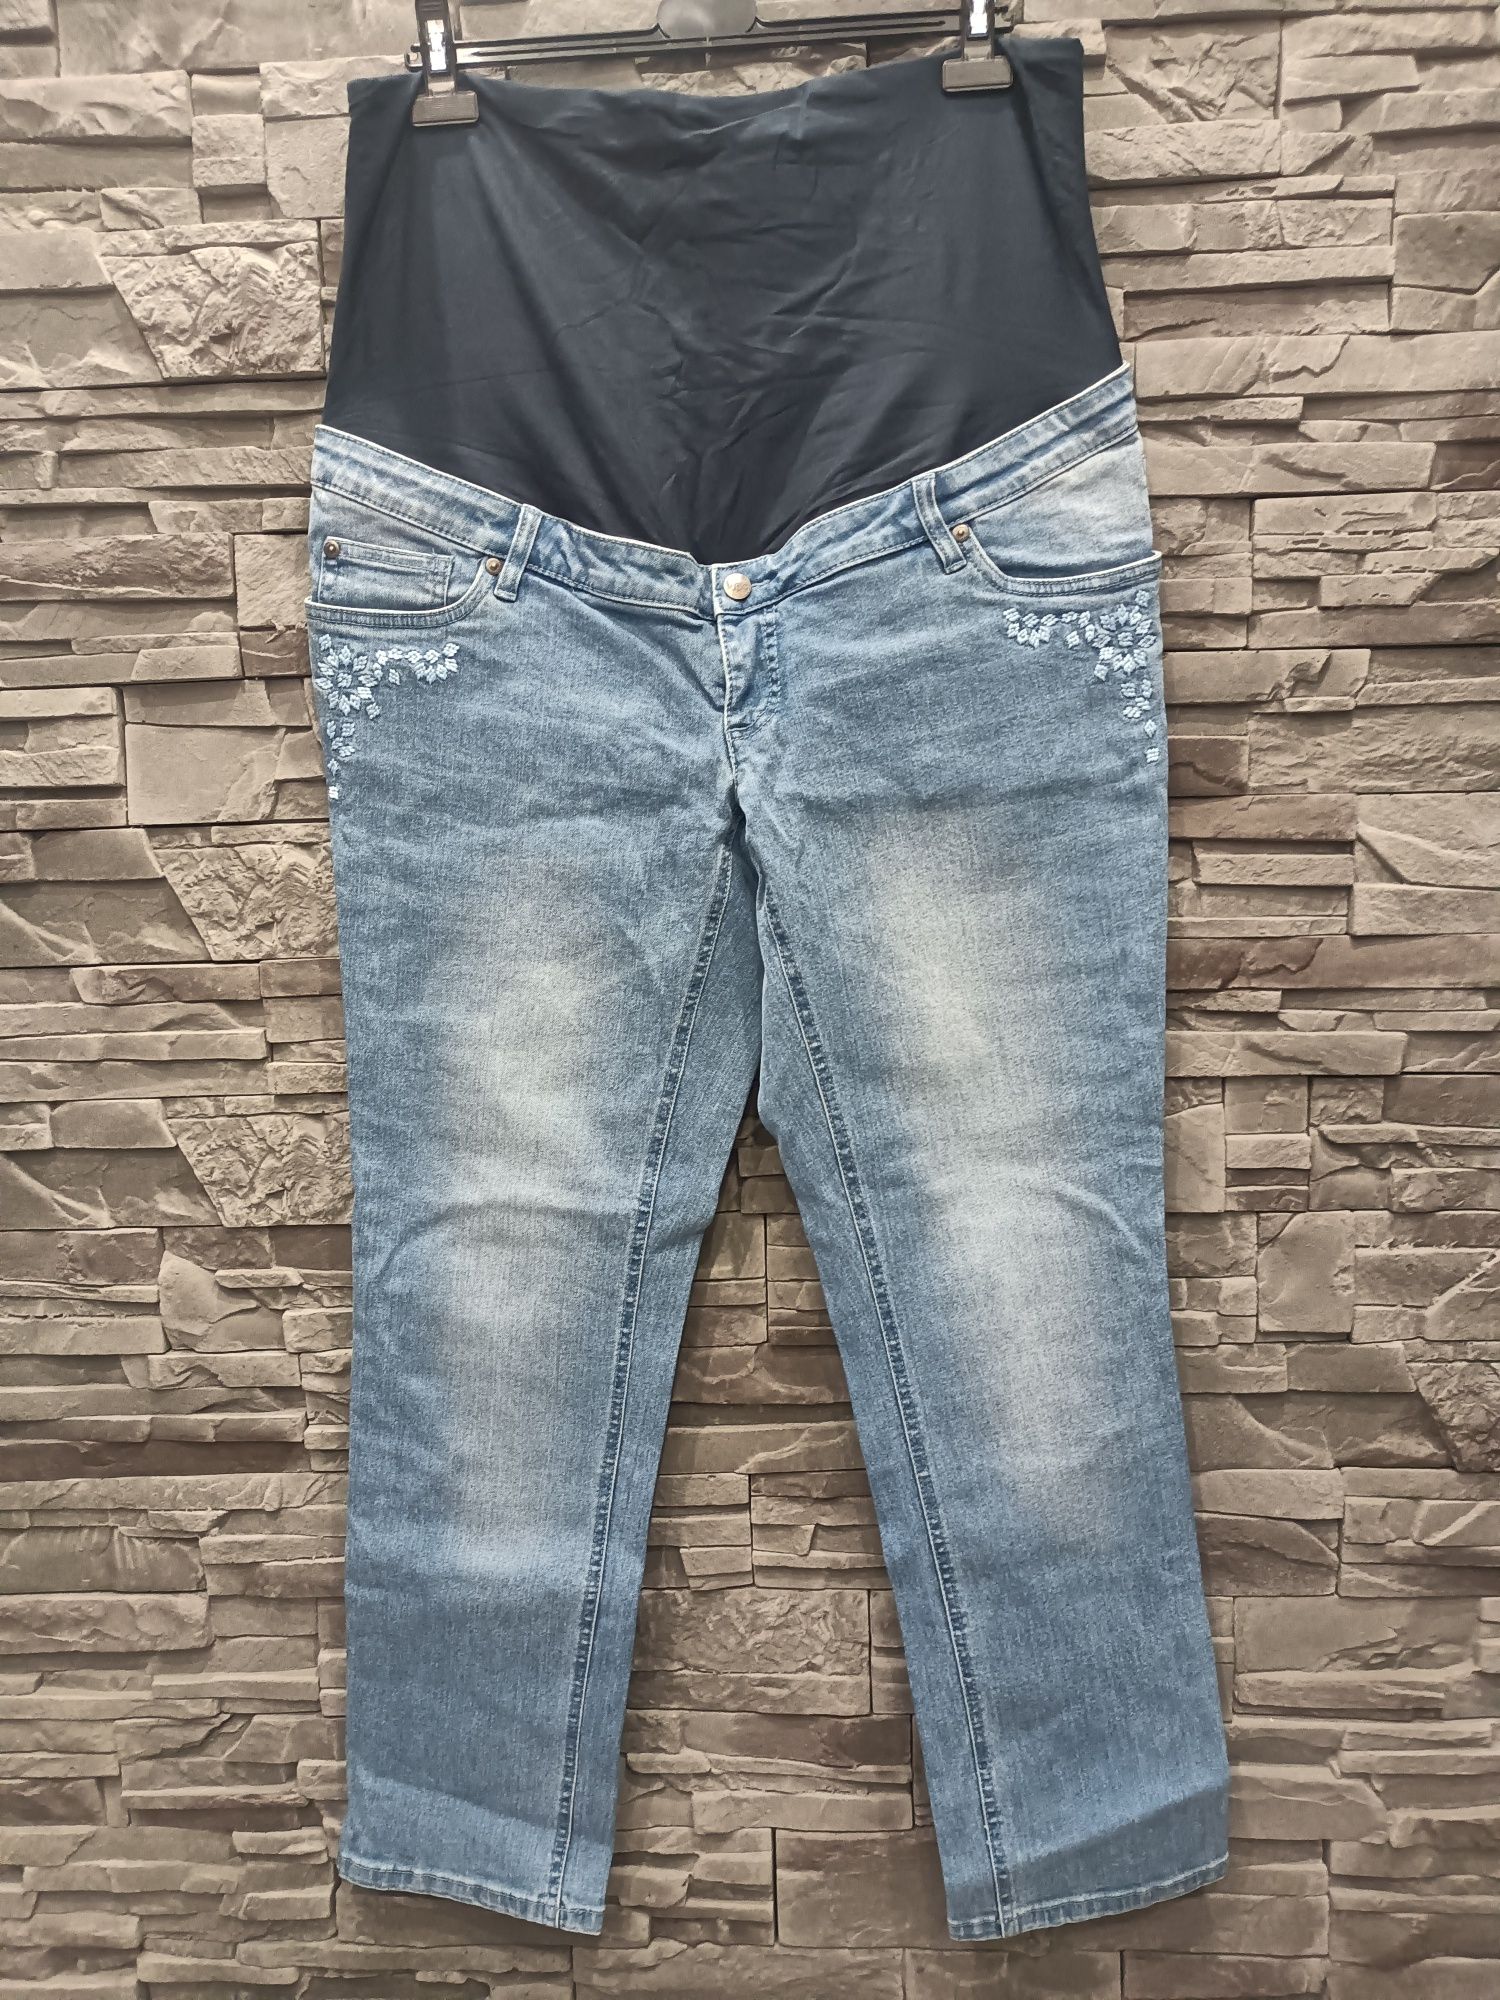 Nowe spodnie ciążowe 46 20 xxxl 3xl jeansy Bonprix bpc plus size